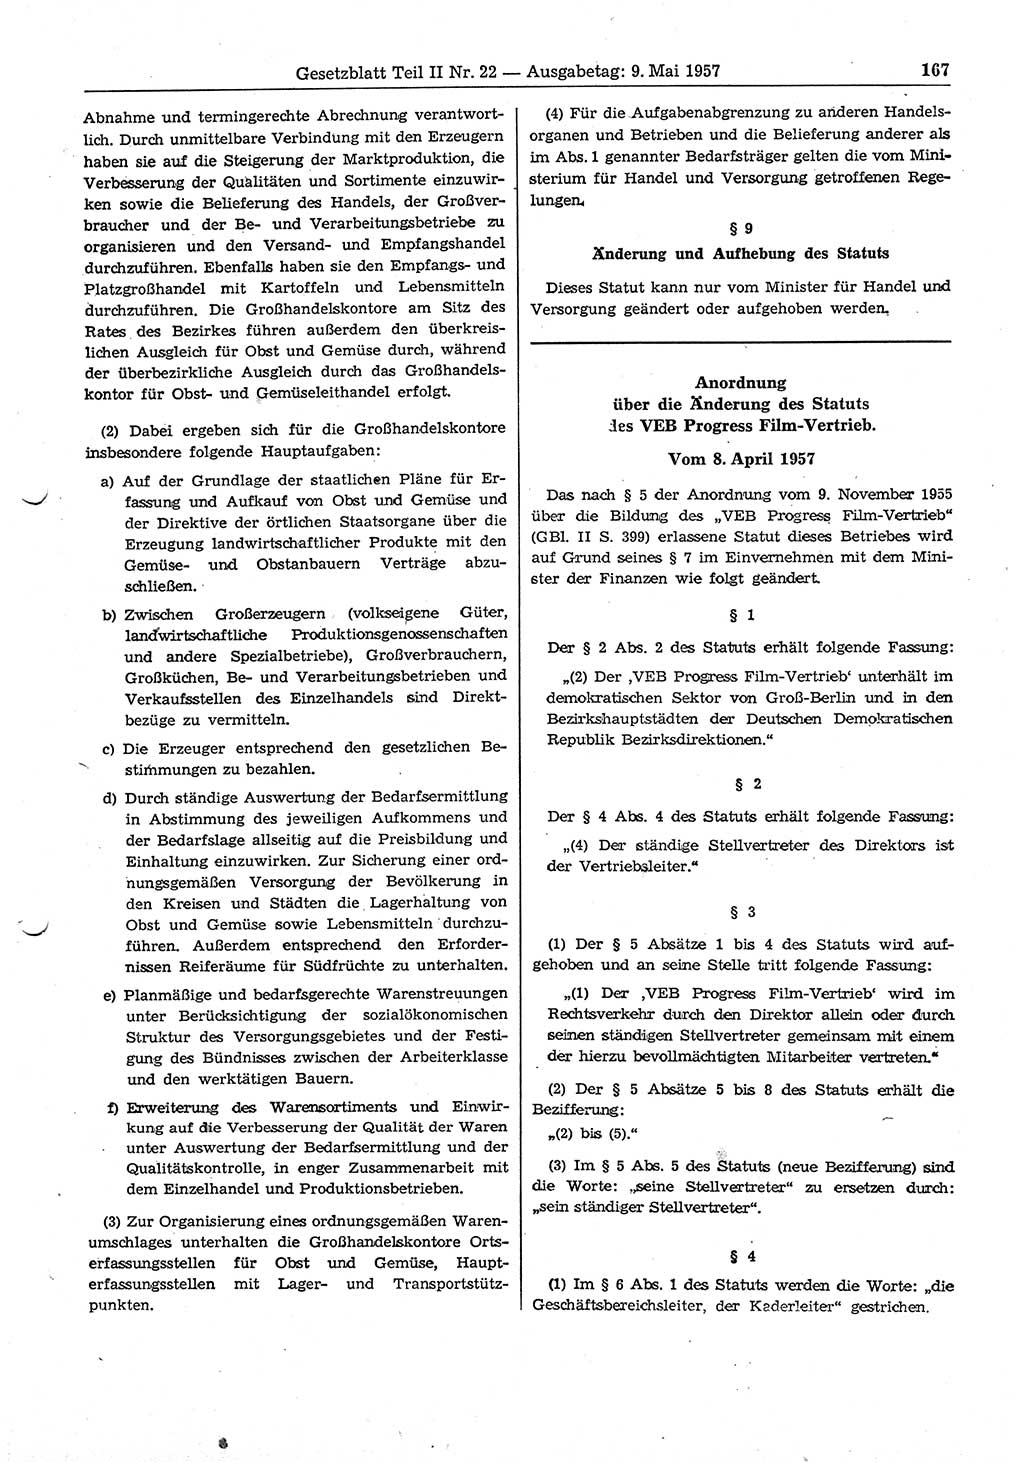 Gesetzblatt (GBl.) der Deutschen Demokratischen Republik (DDR) Teil ⅠⅠ 1957, Seite 167 (GBl. DDR ⅠⅠ 1957, S. 167)